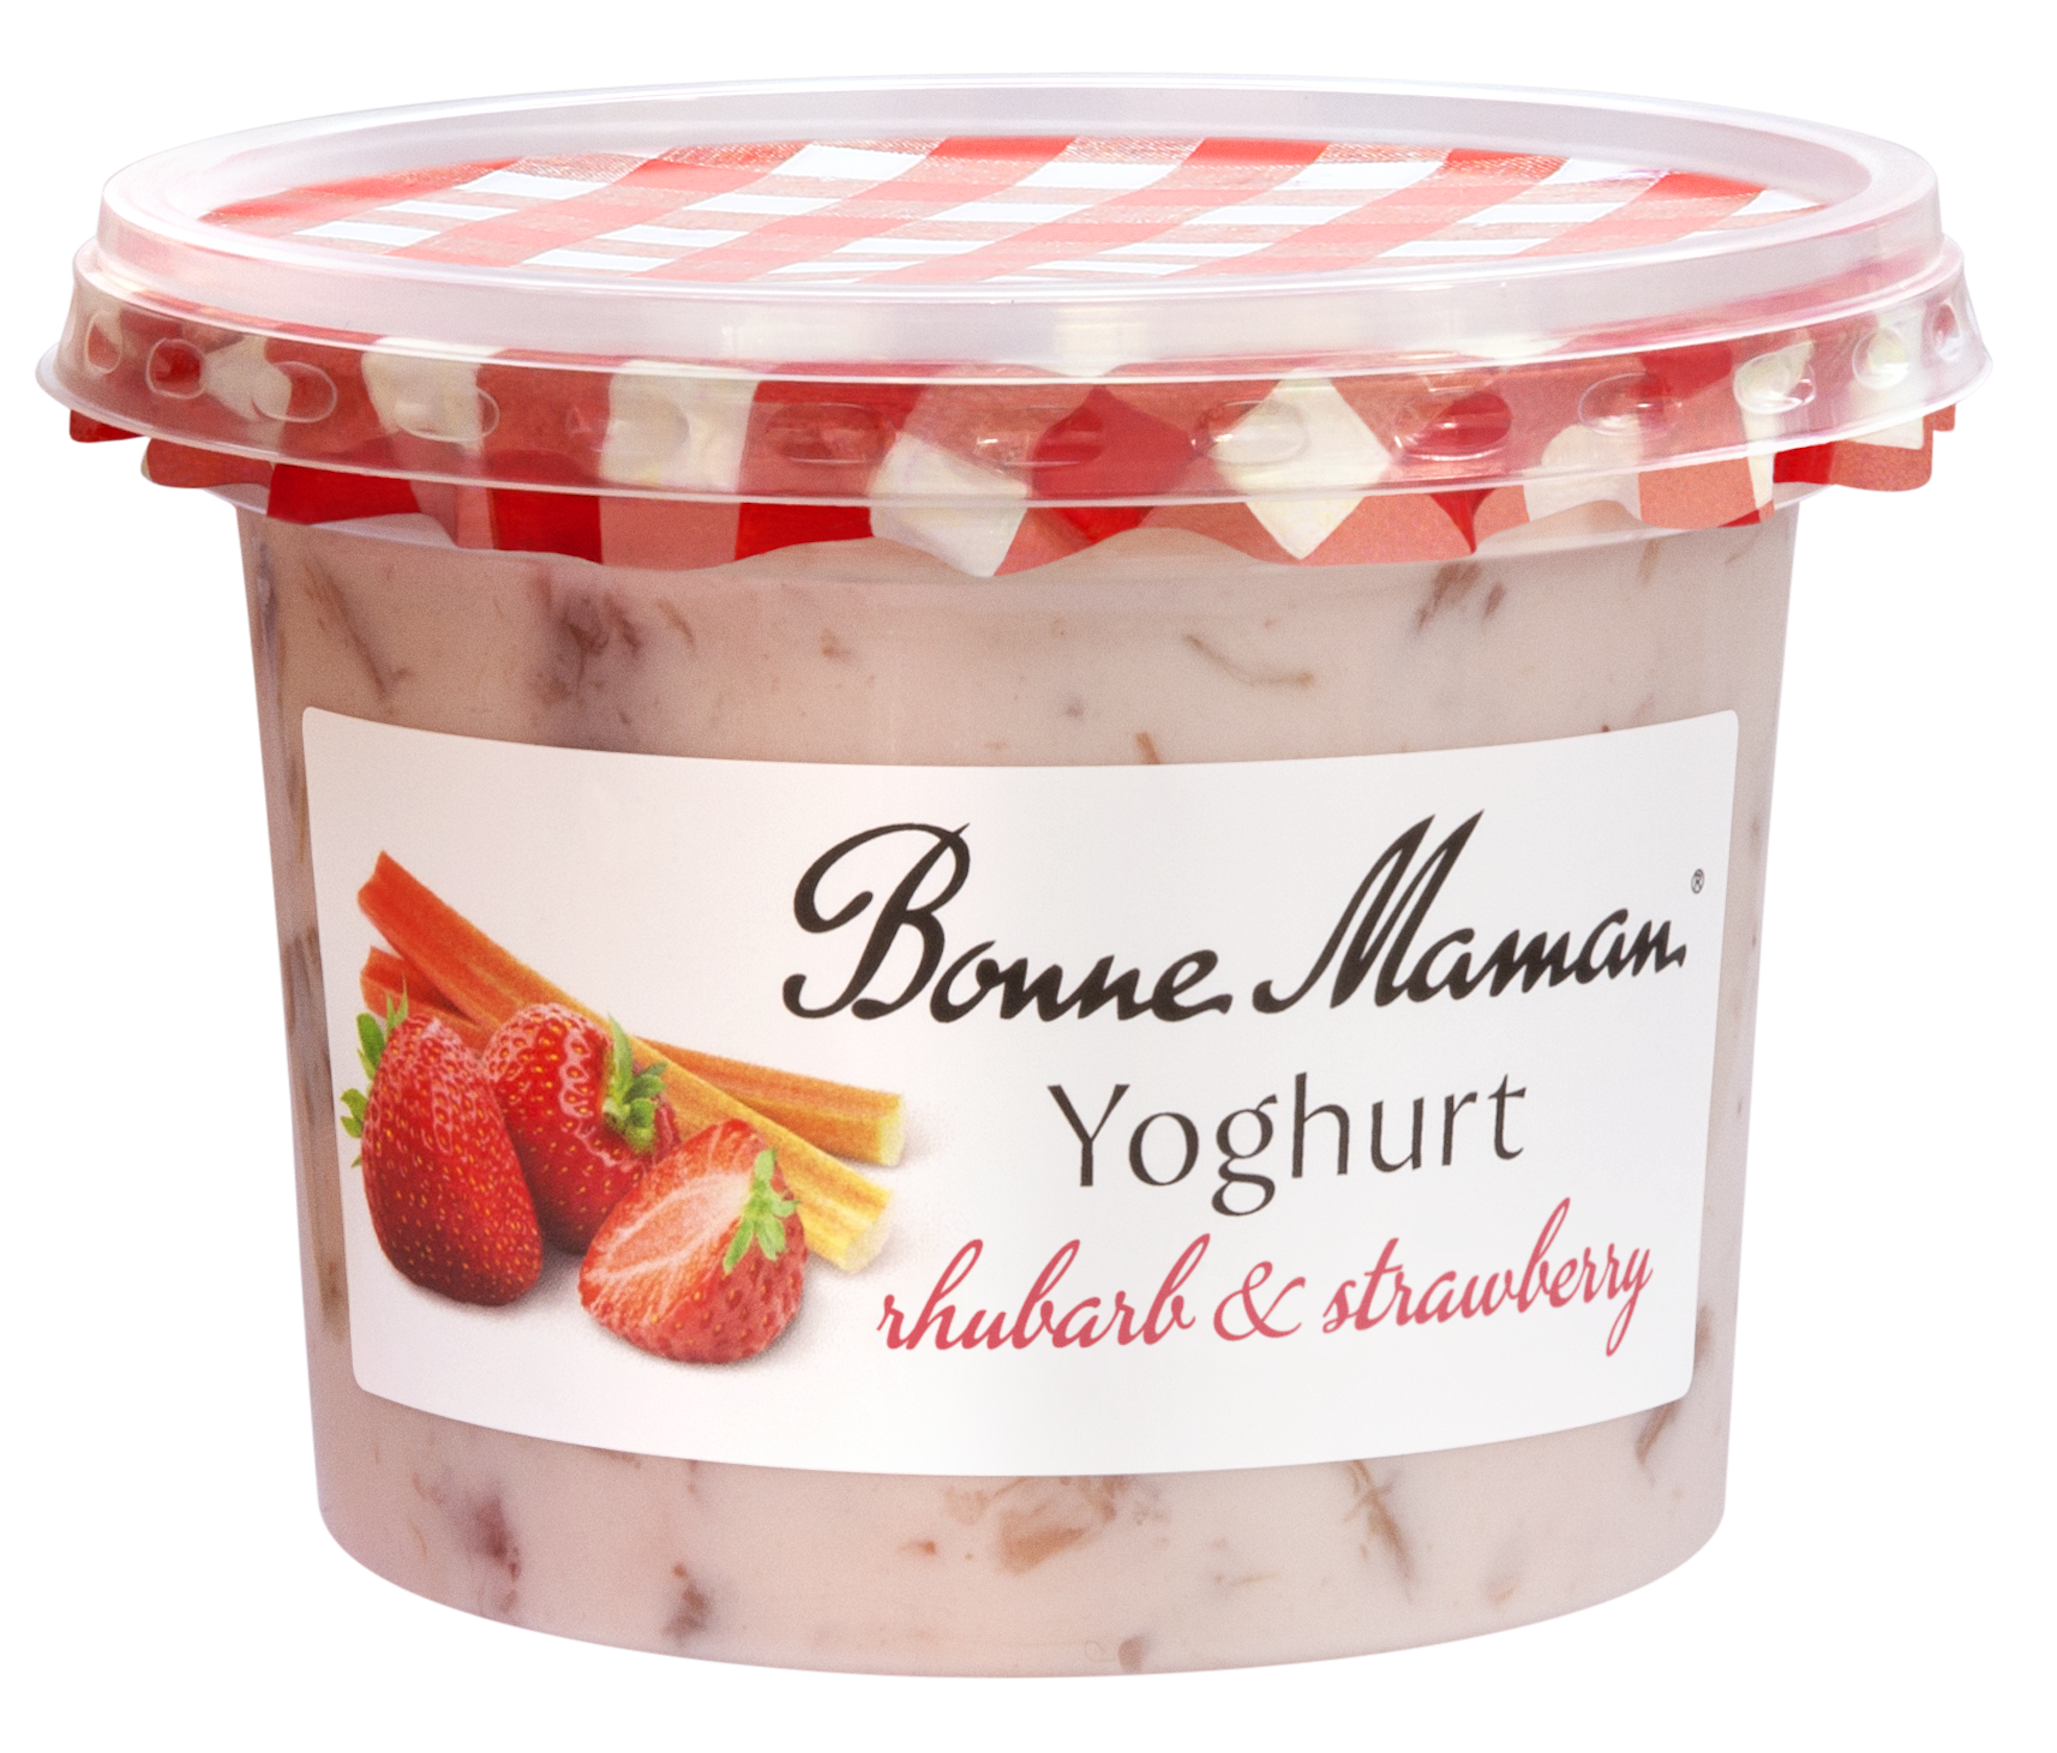 Rhubarb & Strawberry Yoghurt